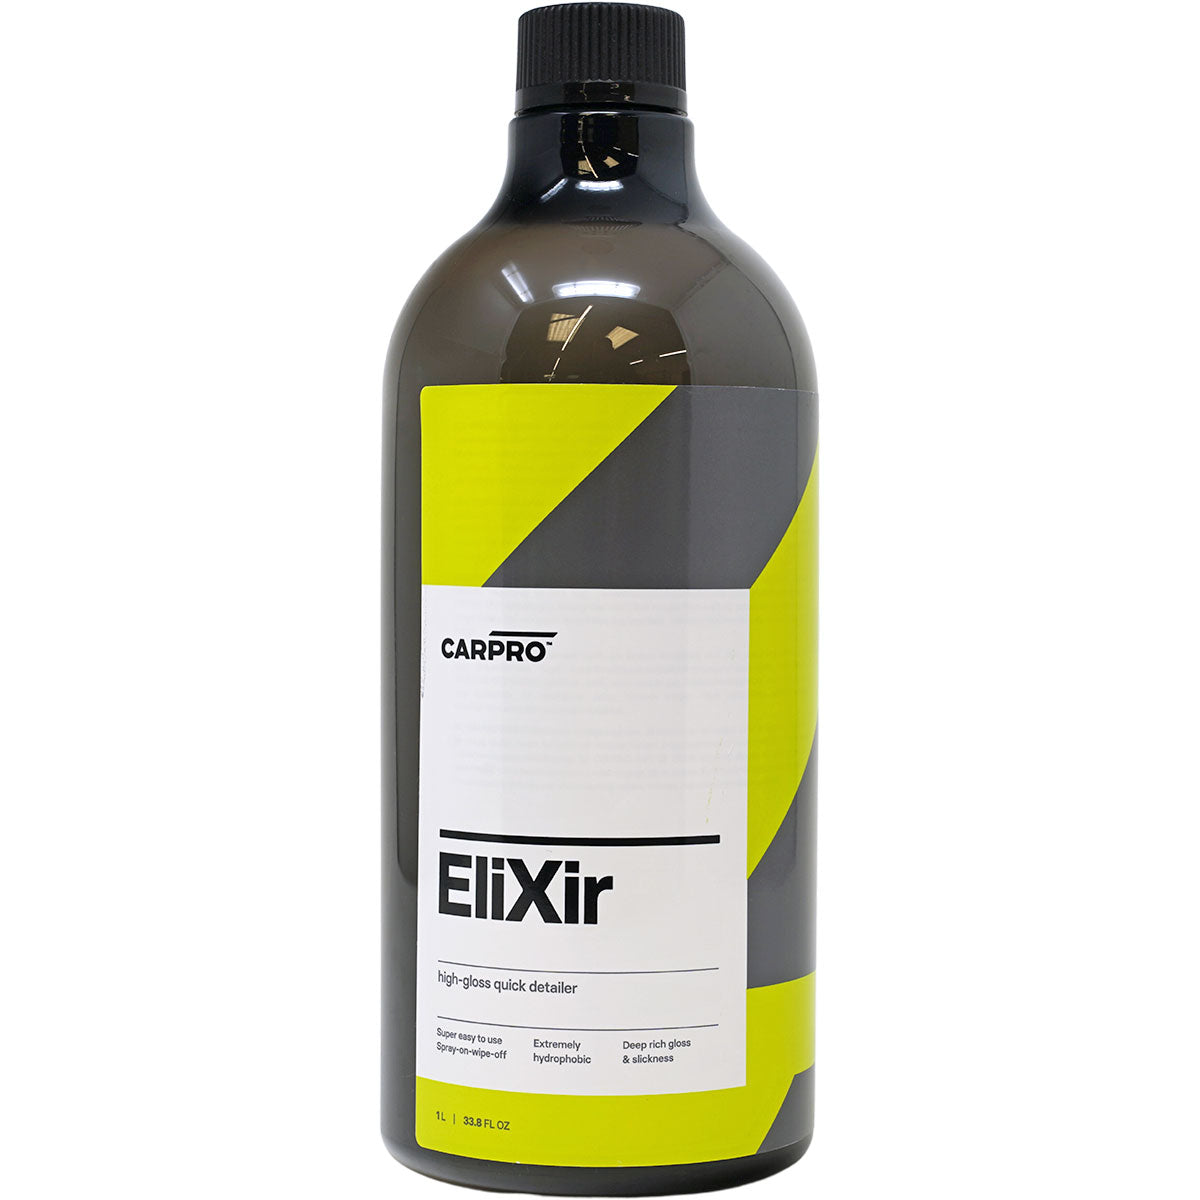 CarPro - Elixir High Gloss Quick Detailer